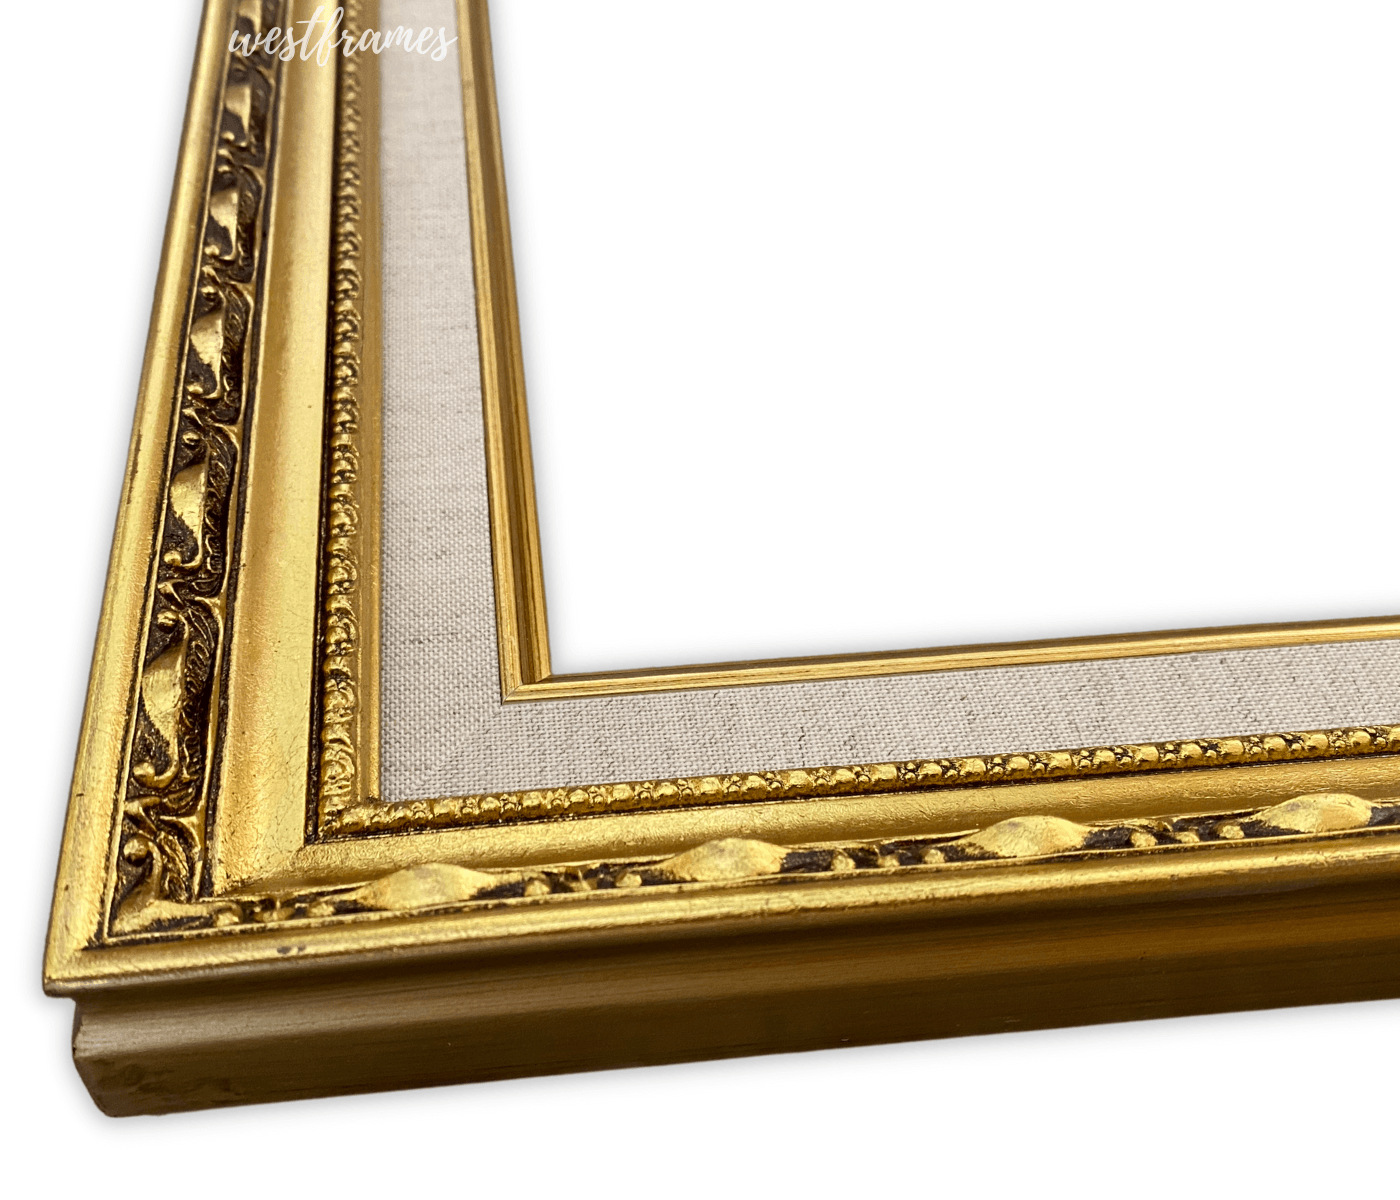 Lulu Antique Gold Leaf Wood Ornate Baroque Picture Frame with Natural Linen Liner 2.5" Wide - West Frames